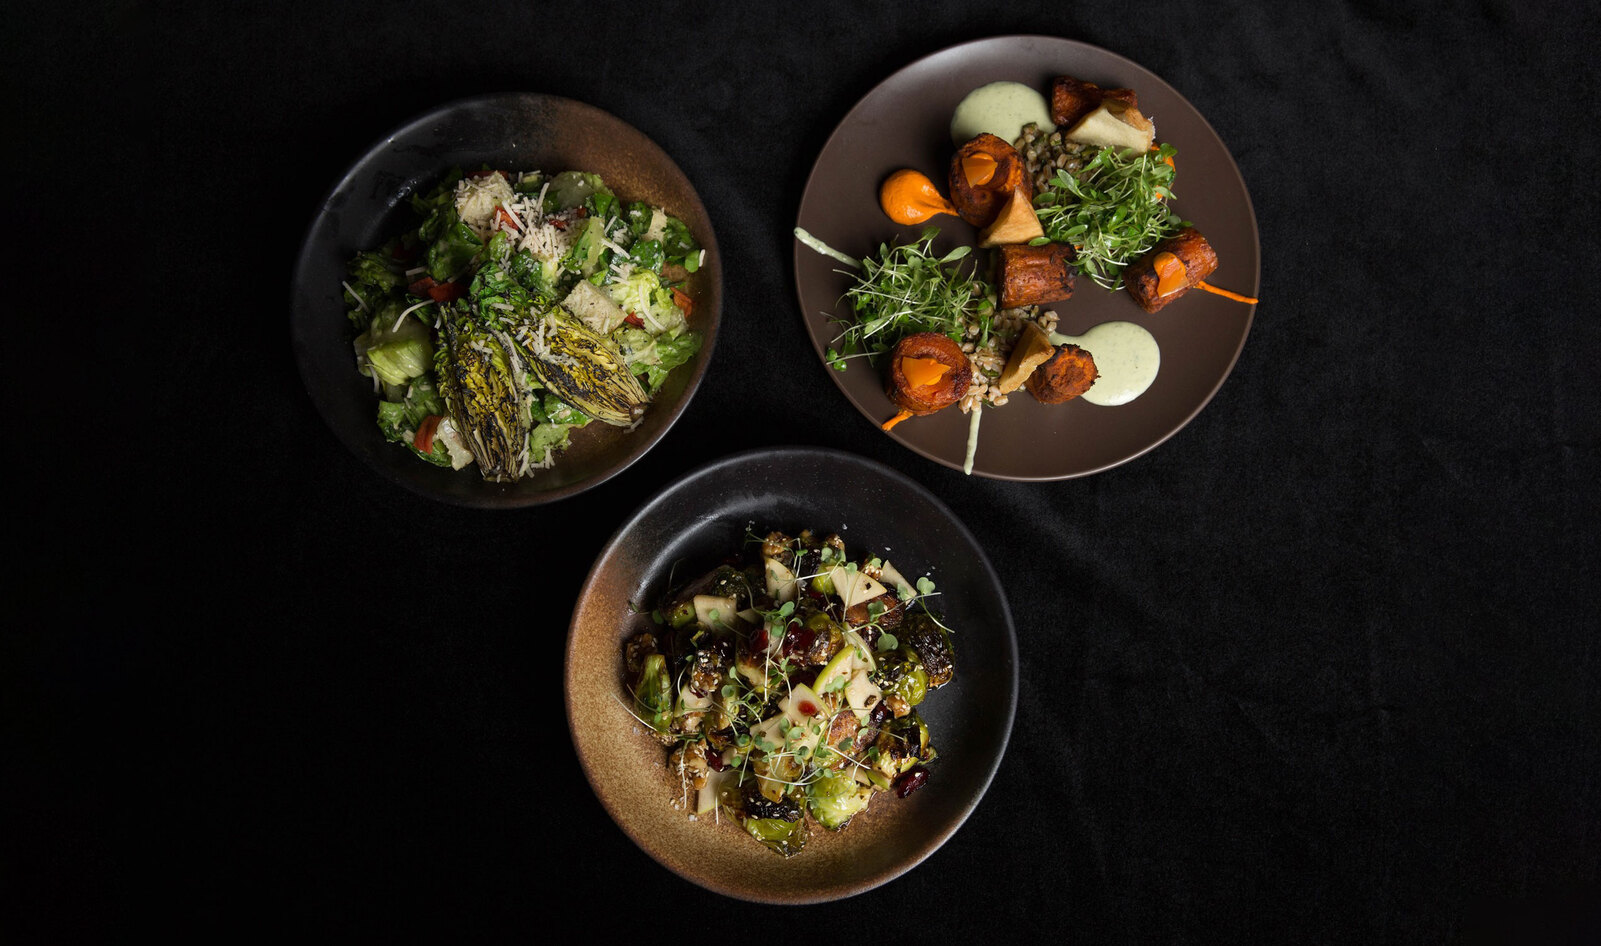 Vegan Restaurateur Ravi DeRossi Opens Three NYC Restaurants on the Same Day